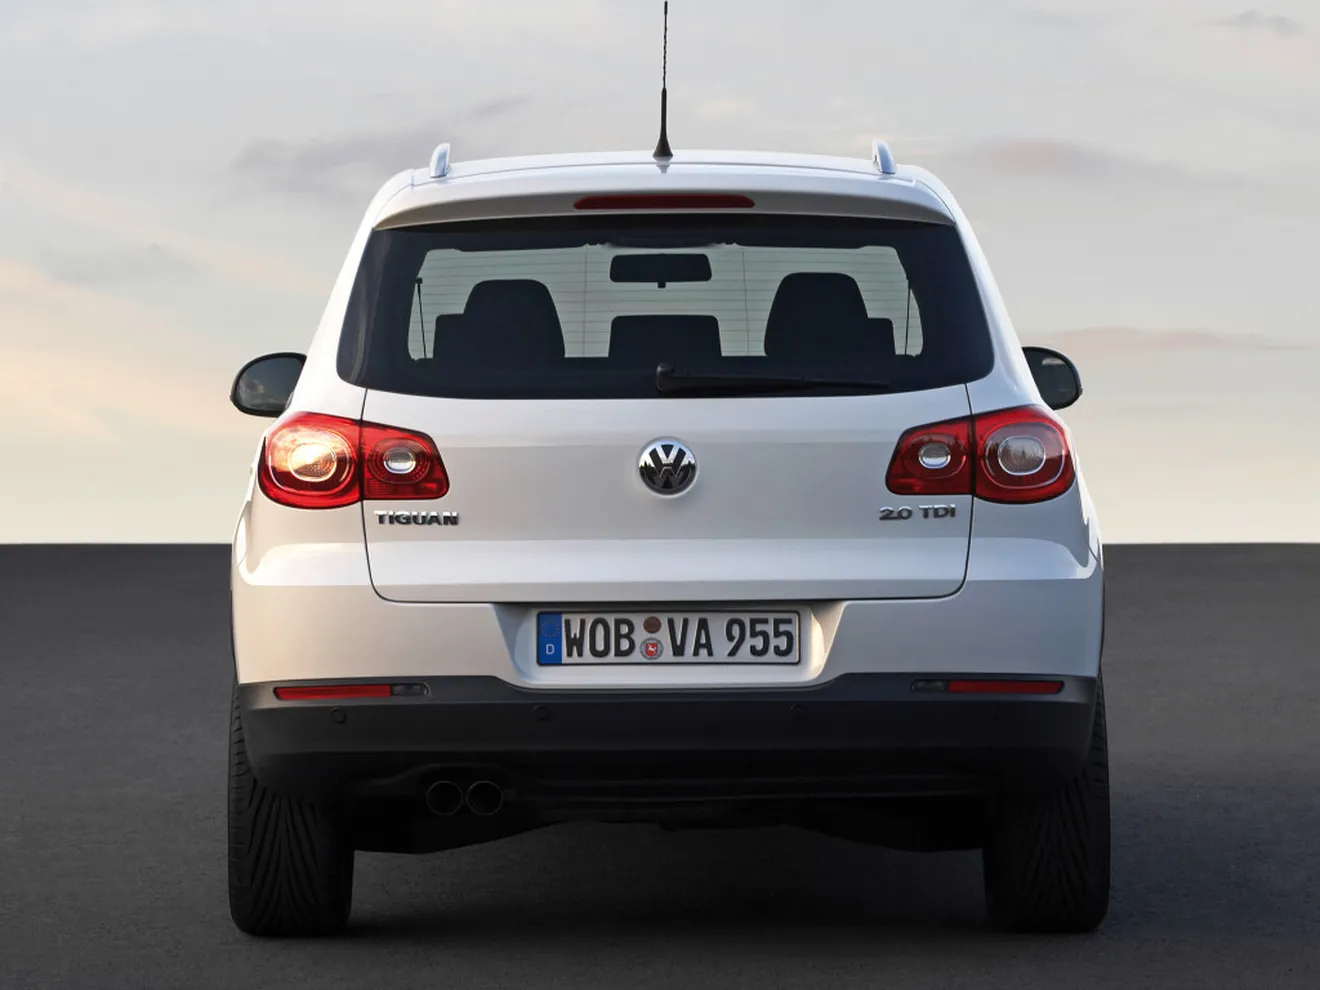 Alemania no castigará a Volkswagen por el caso #Dieselgate